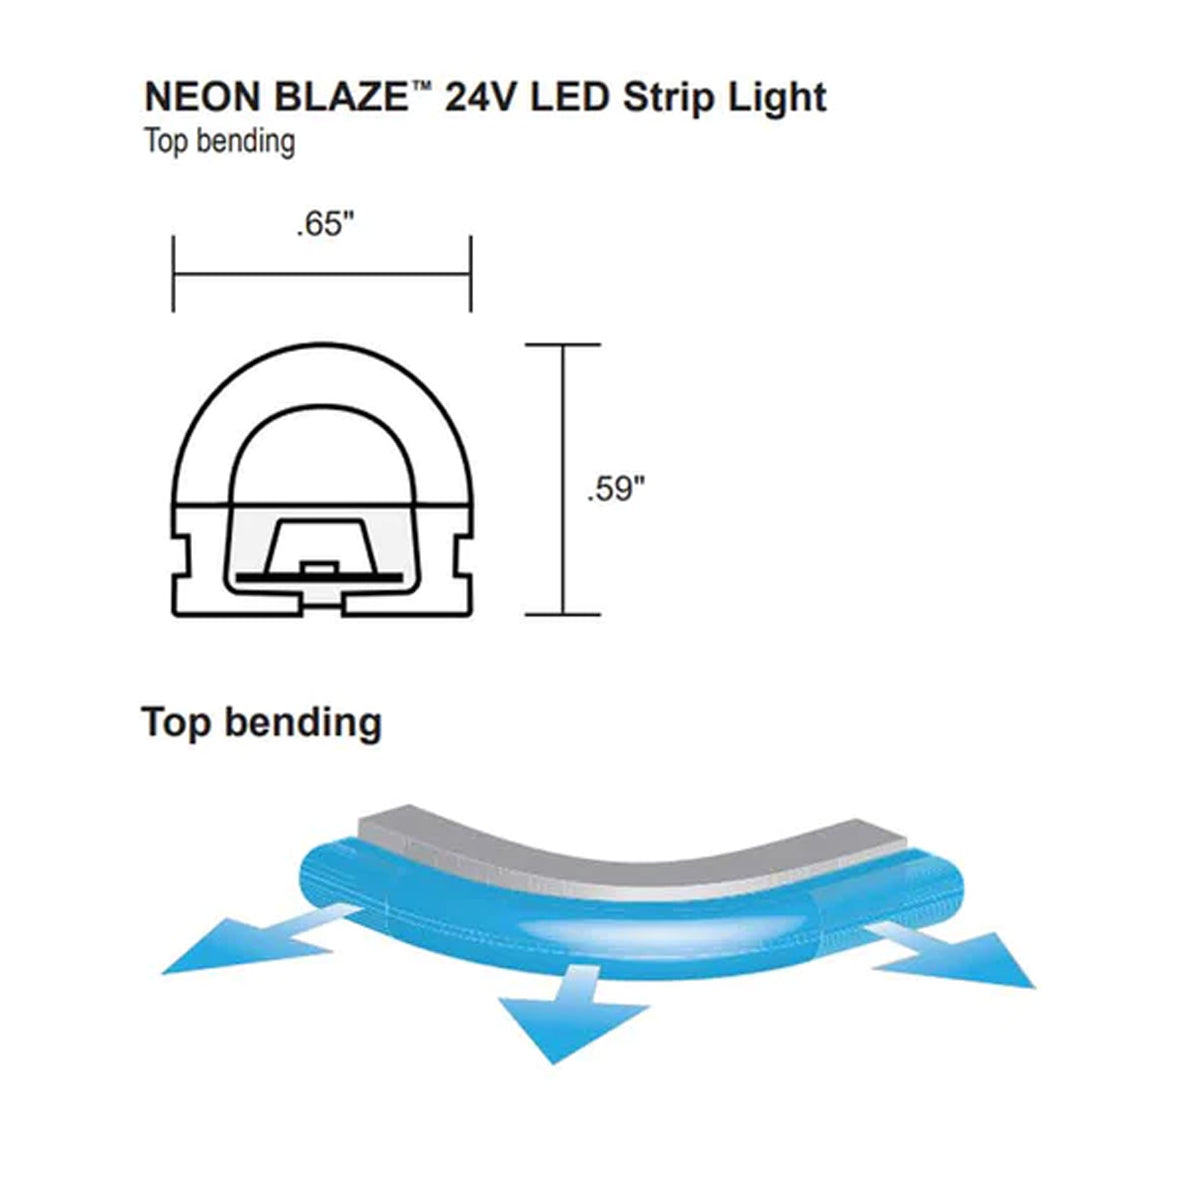 Neon BLAZE LED Neon Strip Light, 24V, Top Bending - Bees Lighting